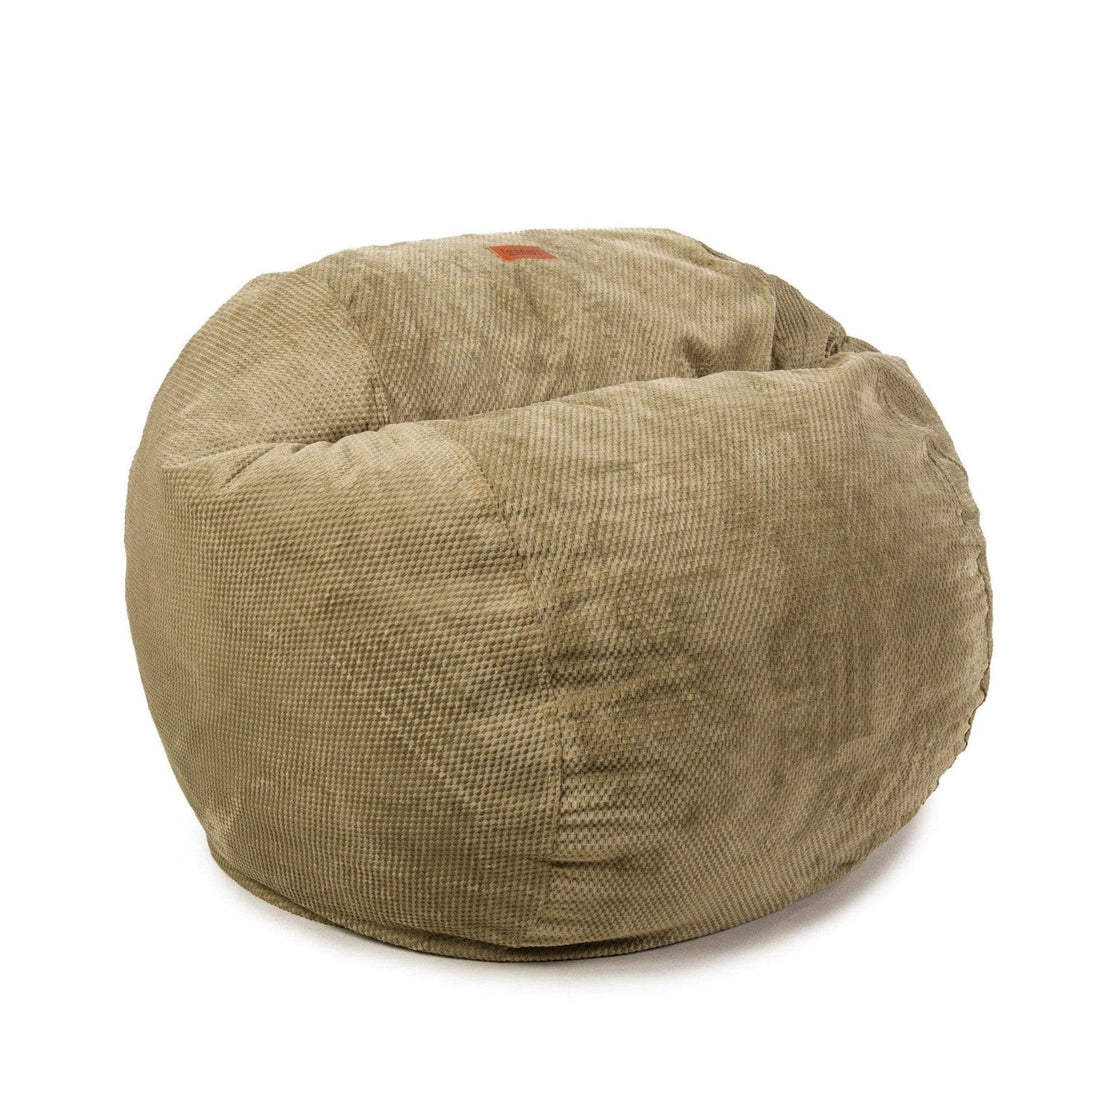 Plastic Vac Bag  CordaRoy's Convertible Bean Bags